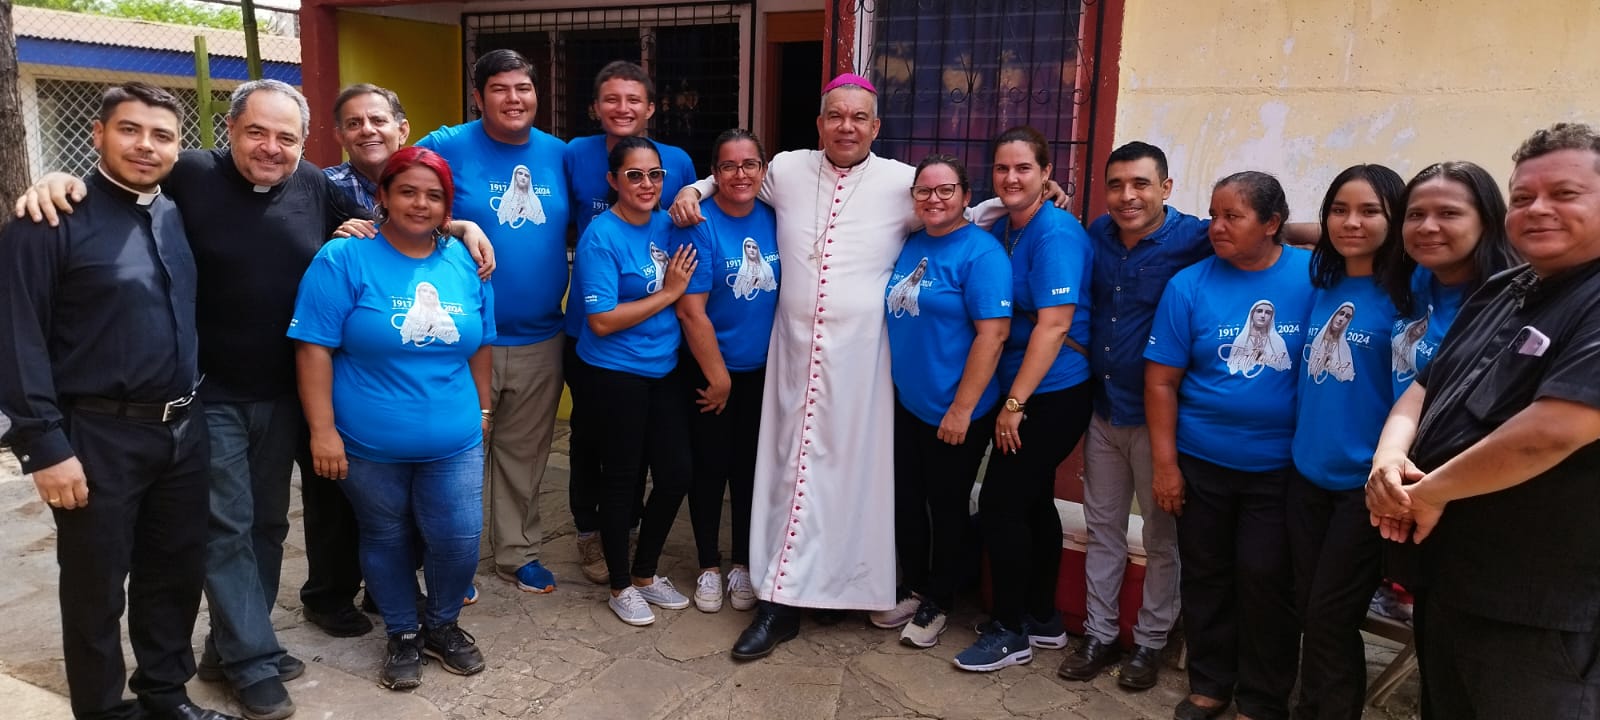 Celebración a Nuestra Señora de Fátima en Nicaragua